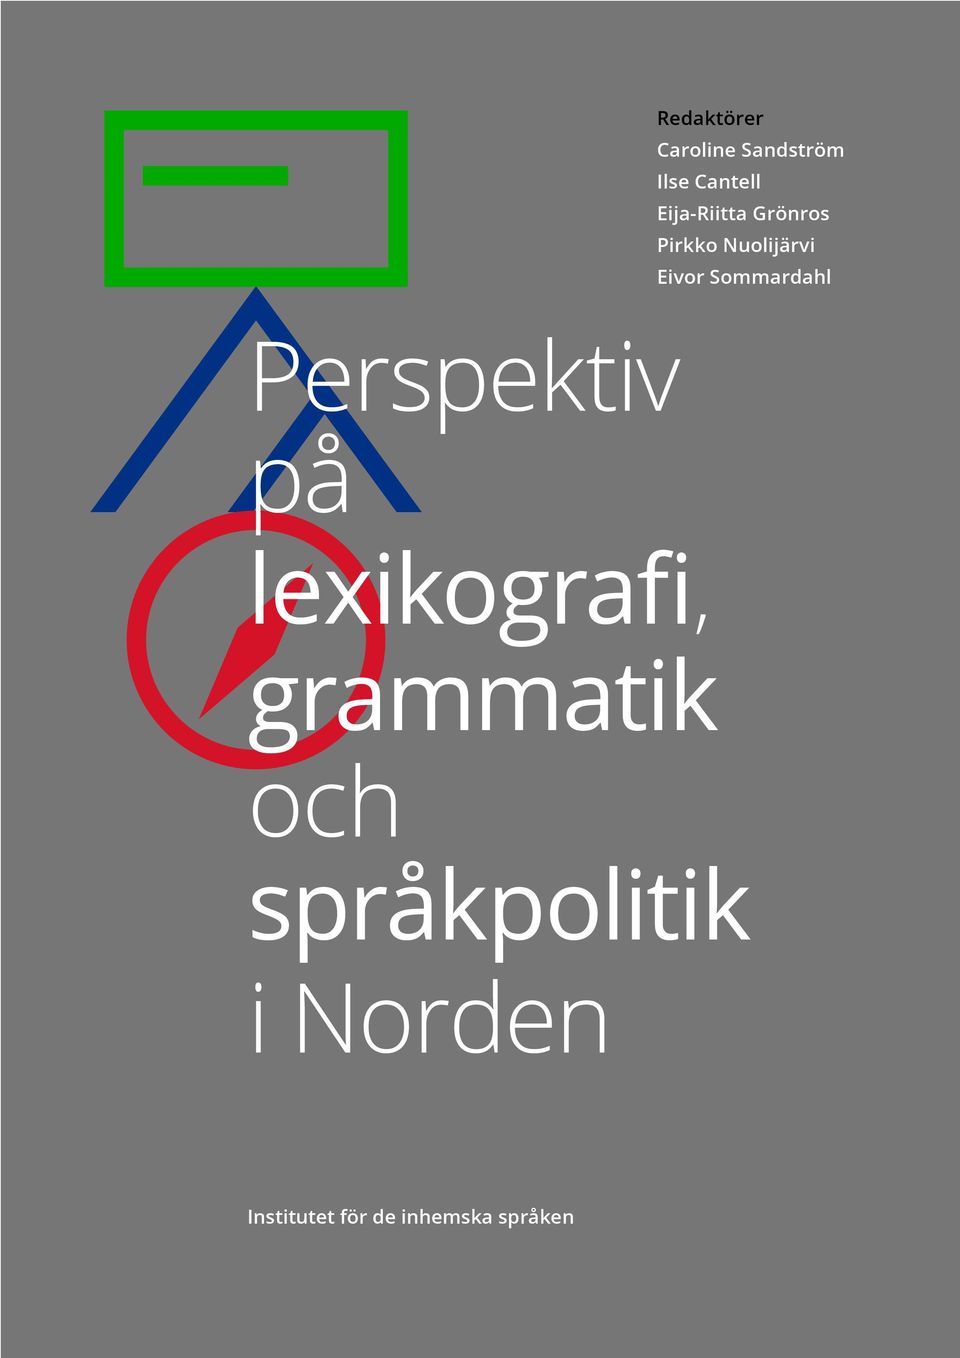 Sommardahl Perspektiv på lexikografi, grammatik